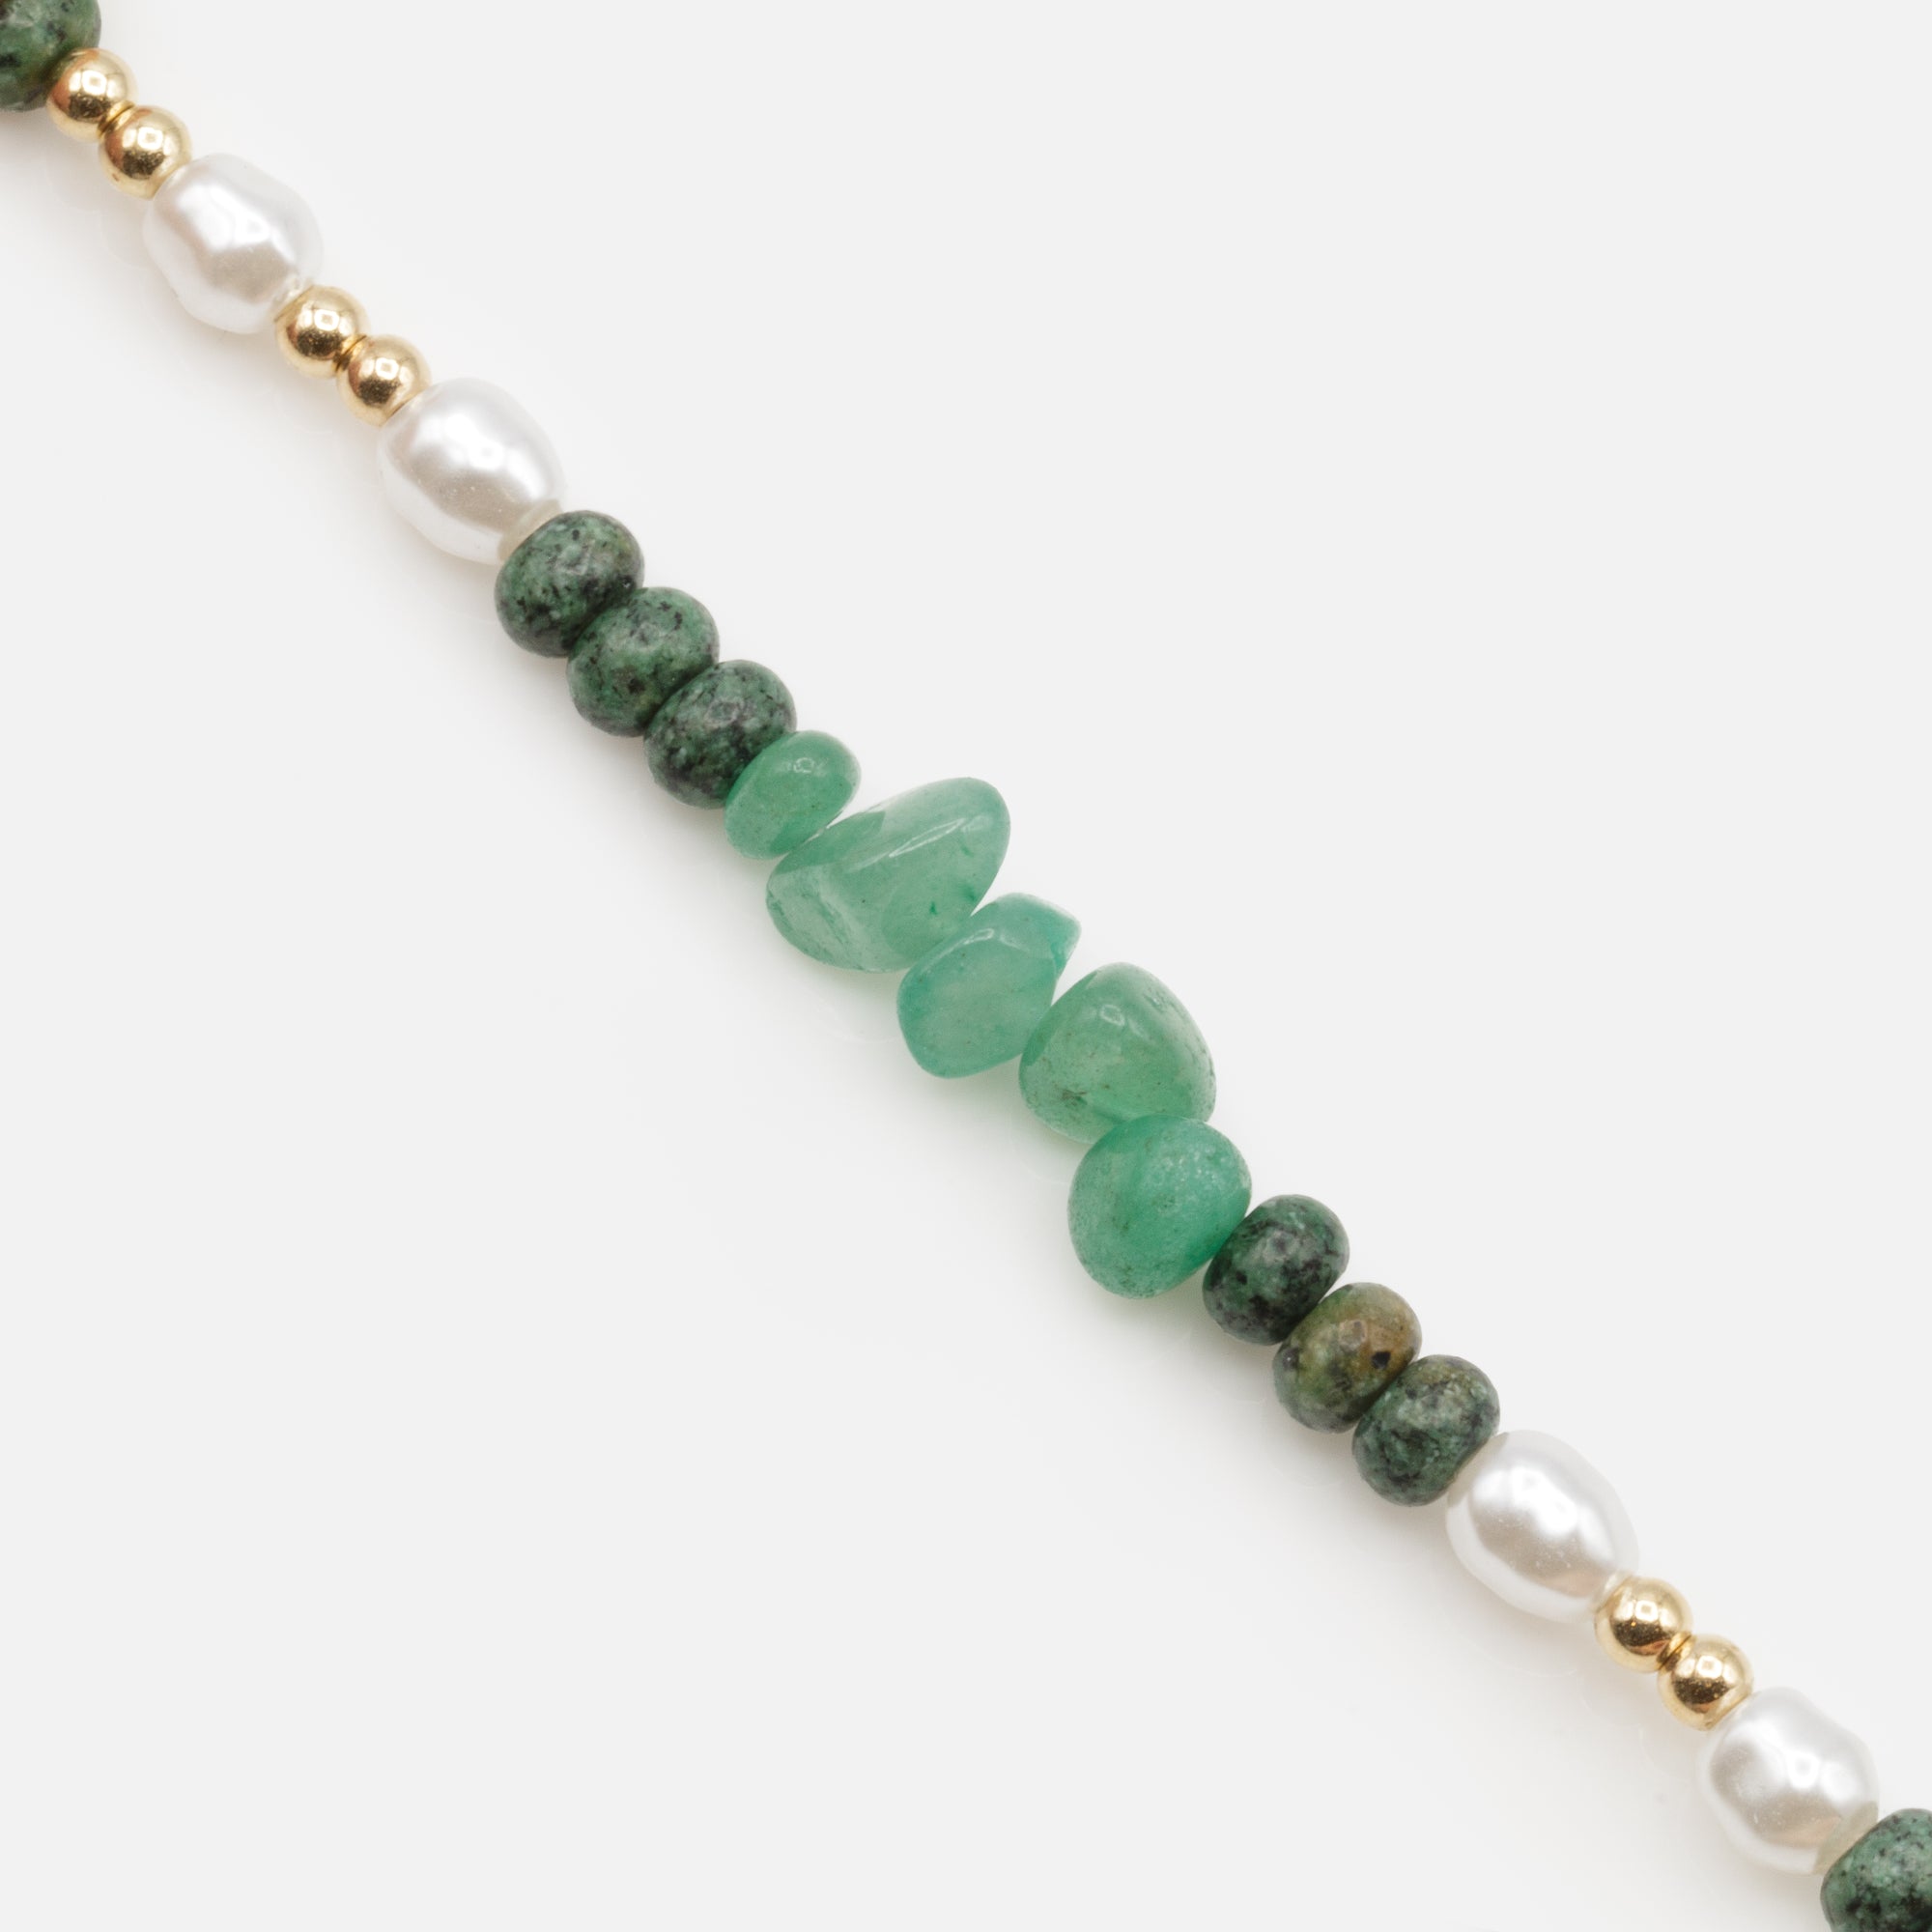 Bracelet pierres vertes avec perles et billes dorées